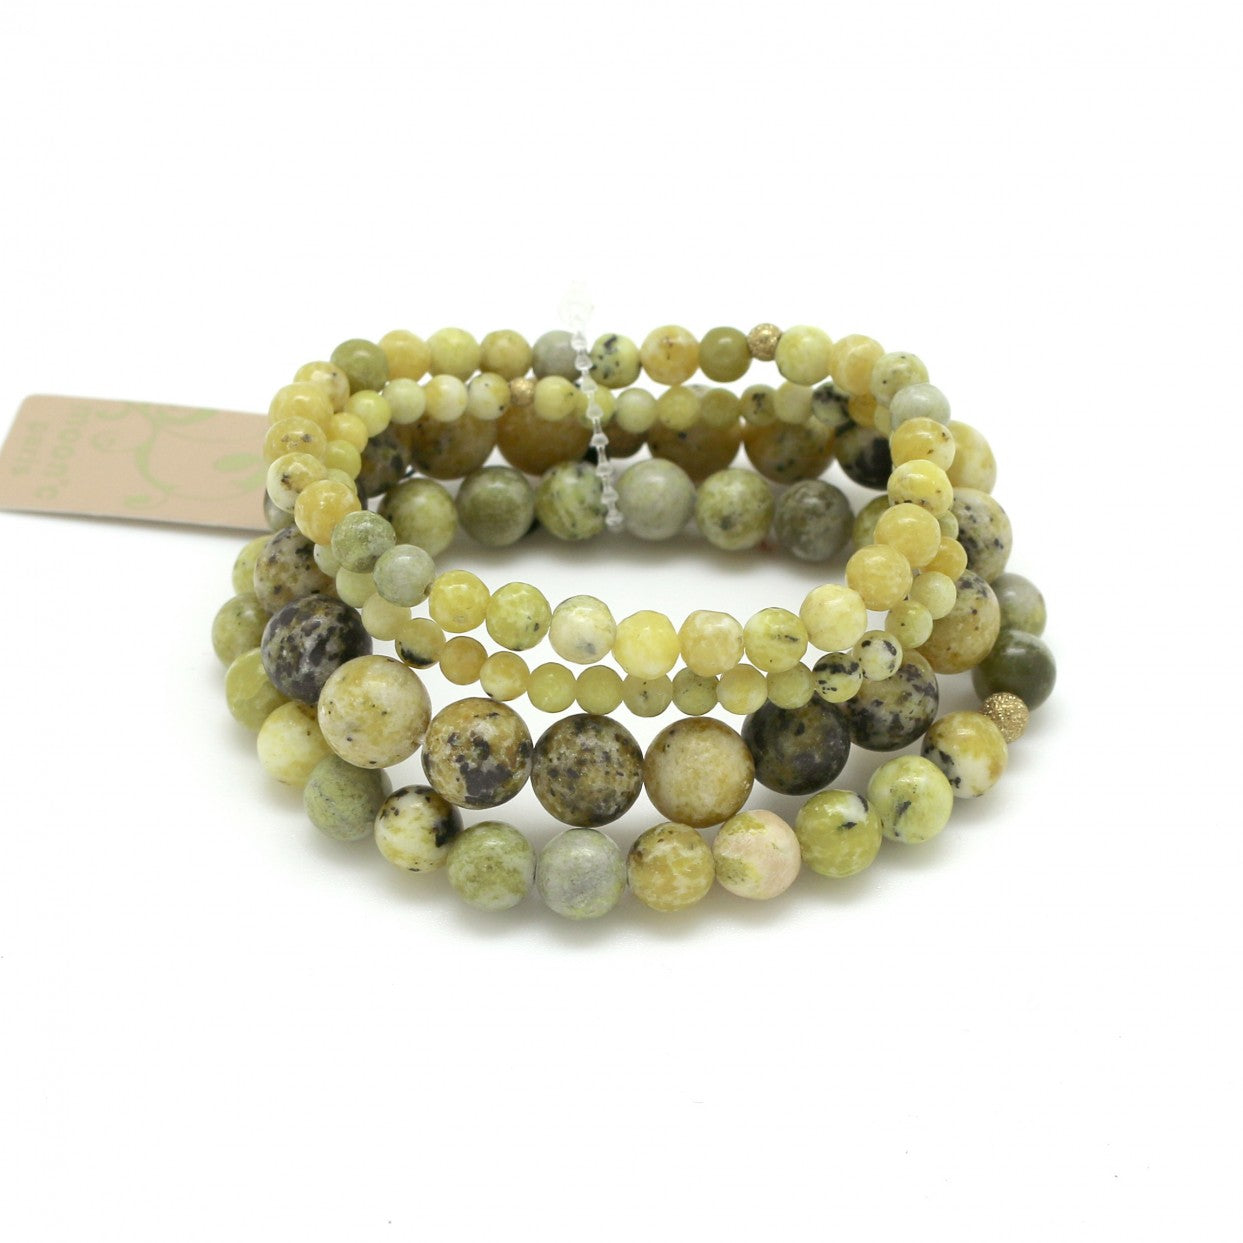 Moon C Jasper Stretch Bracelet For Women / Jasper Stones / Green / Gift Idea / Gemstone Jewelry